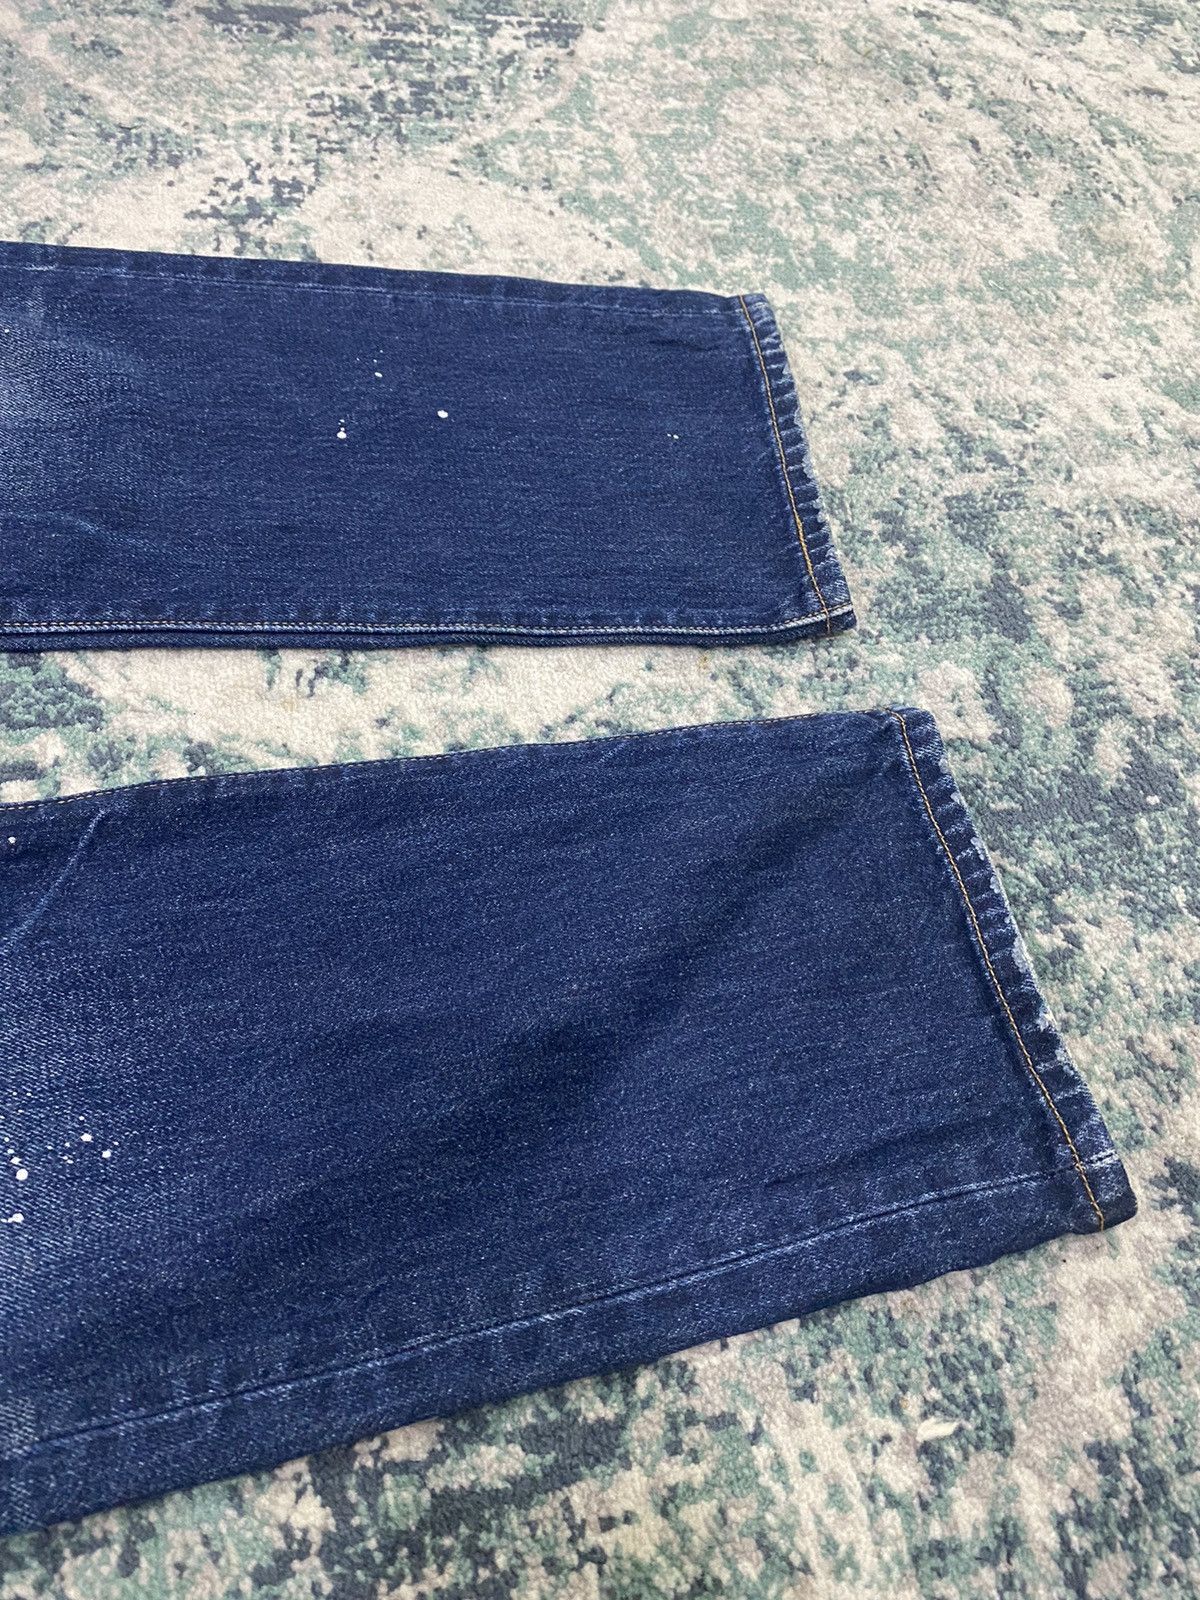 Levi’s Original Paint Splatter Limited Edition Jeans - 6